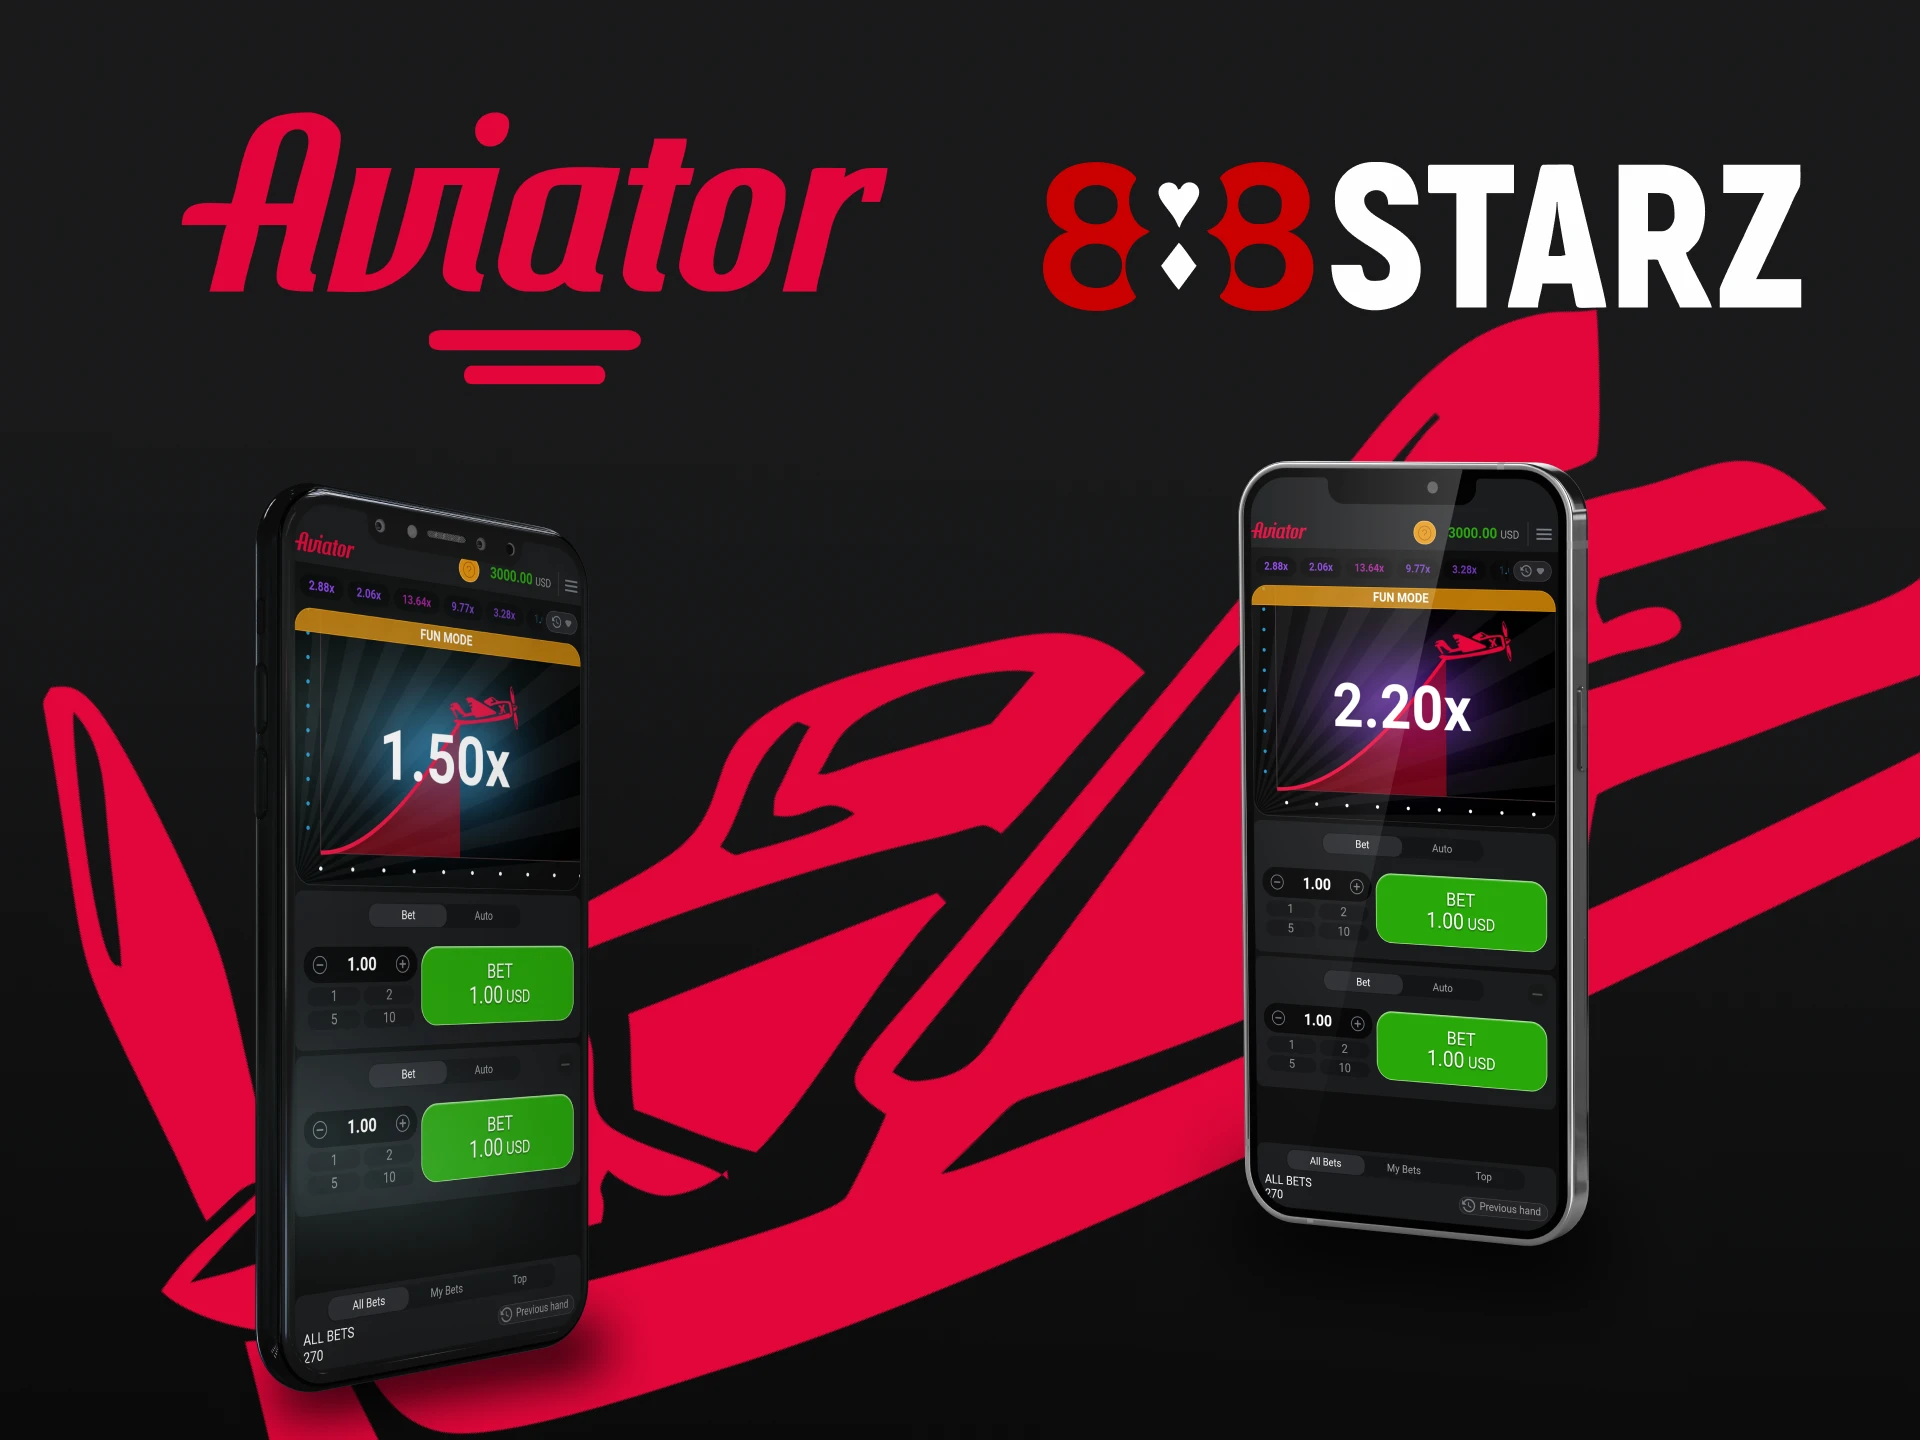 Escolha seu dispositivo para jogar Aviator através do aplicativo 888starz.